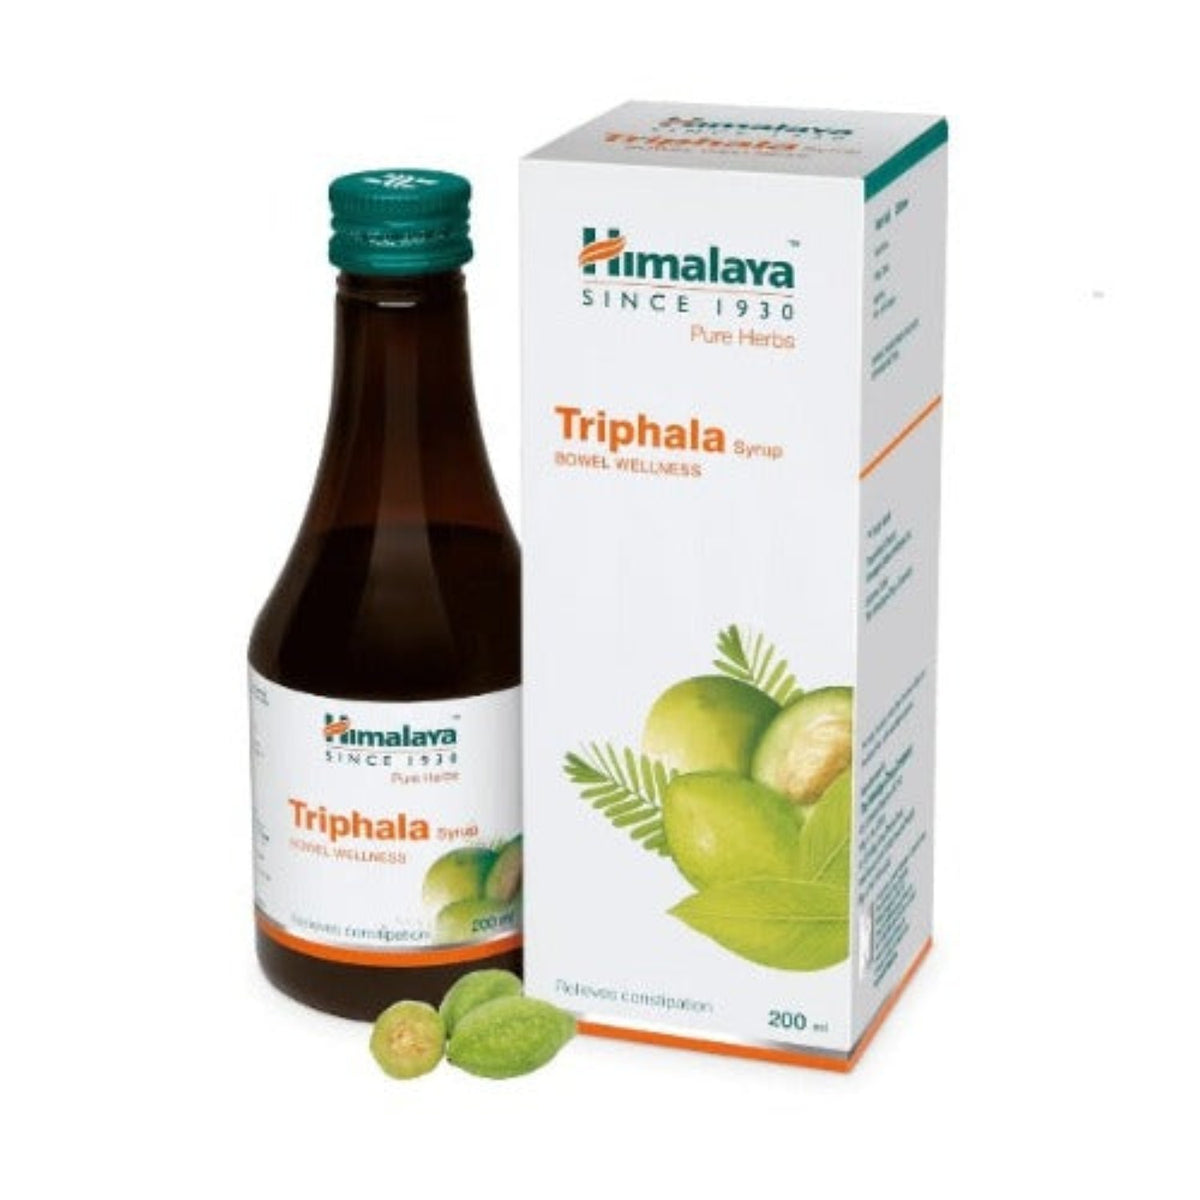 Himalaya Pure Herbs Bowel Wellness Kräuter-Ayurvedischer Triphala-Sirup lindert Verstopfung, 200 ml